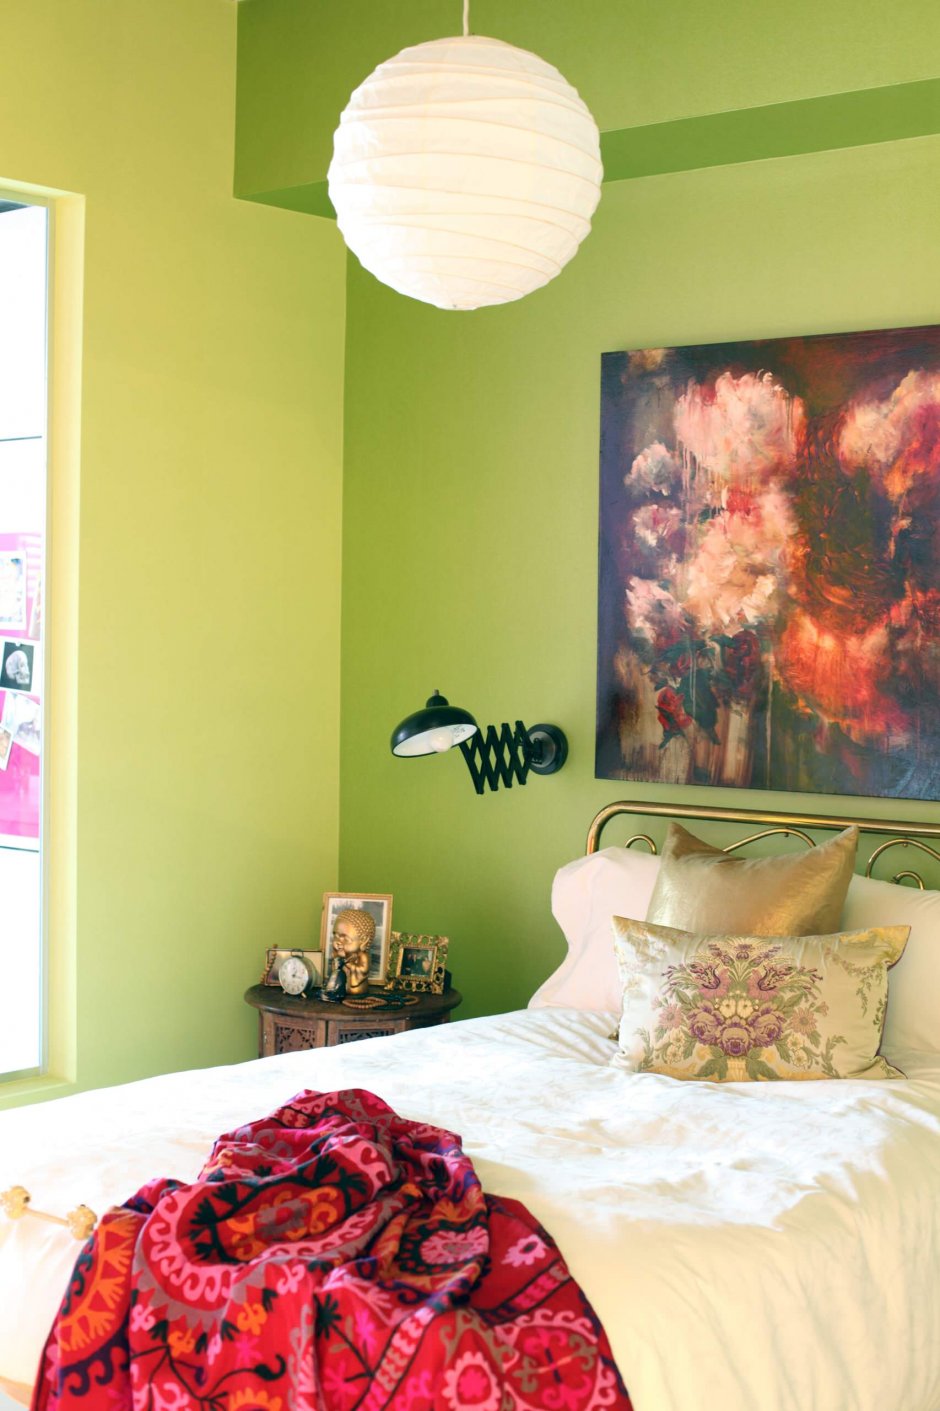 Идеи покраски стен в спальне